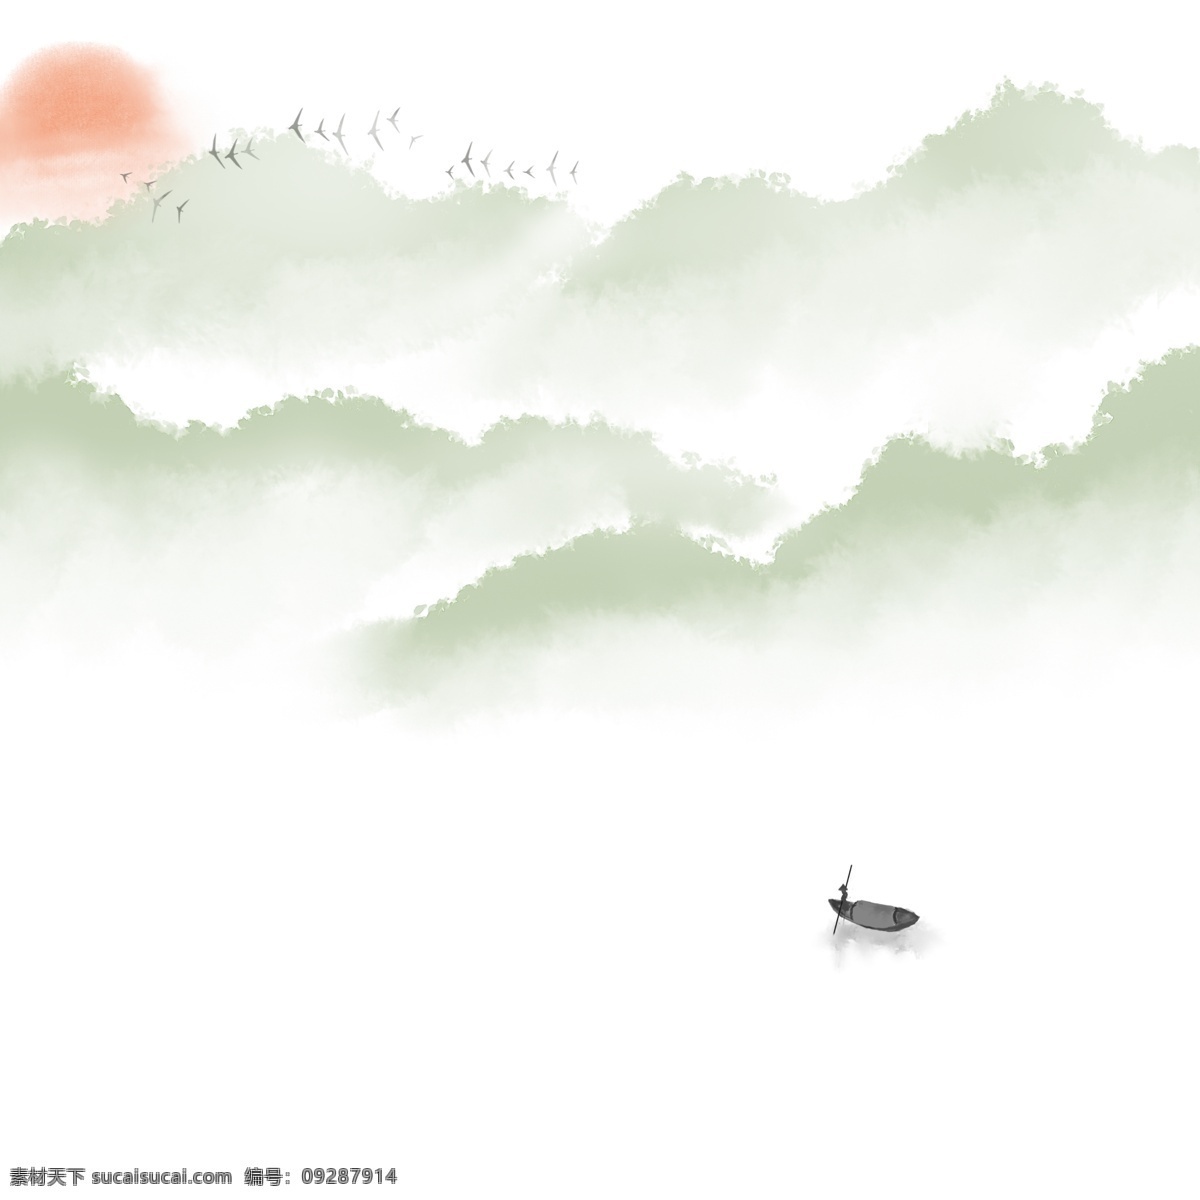 卡通 手绘 中国 风 划船 人 卡通手绘 中国风 水彩 水墨 小清新 唯美 山 山峰 正在划船的人 远处的山峰 小鸟